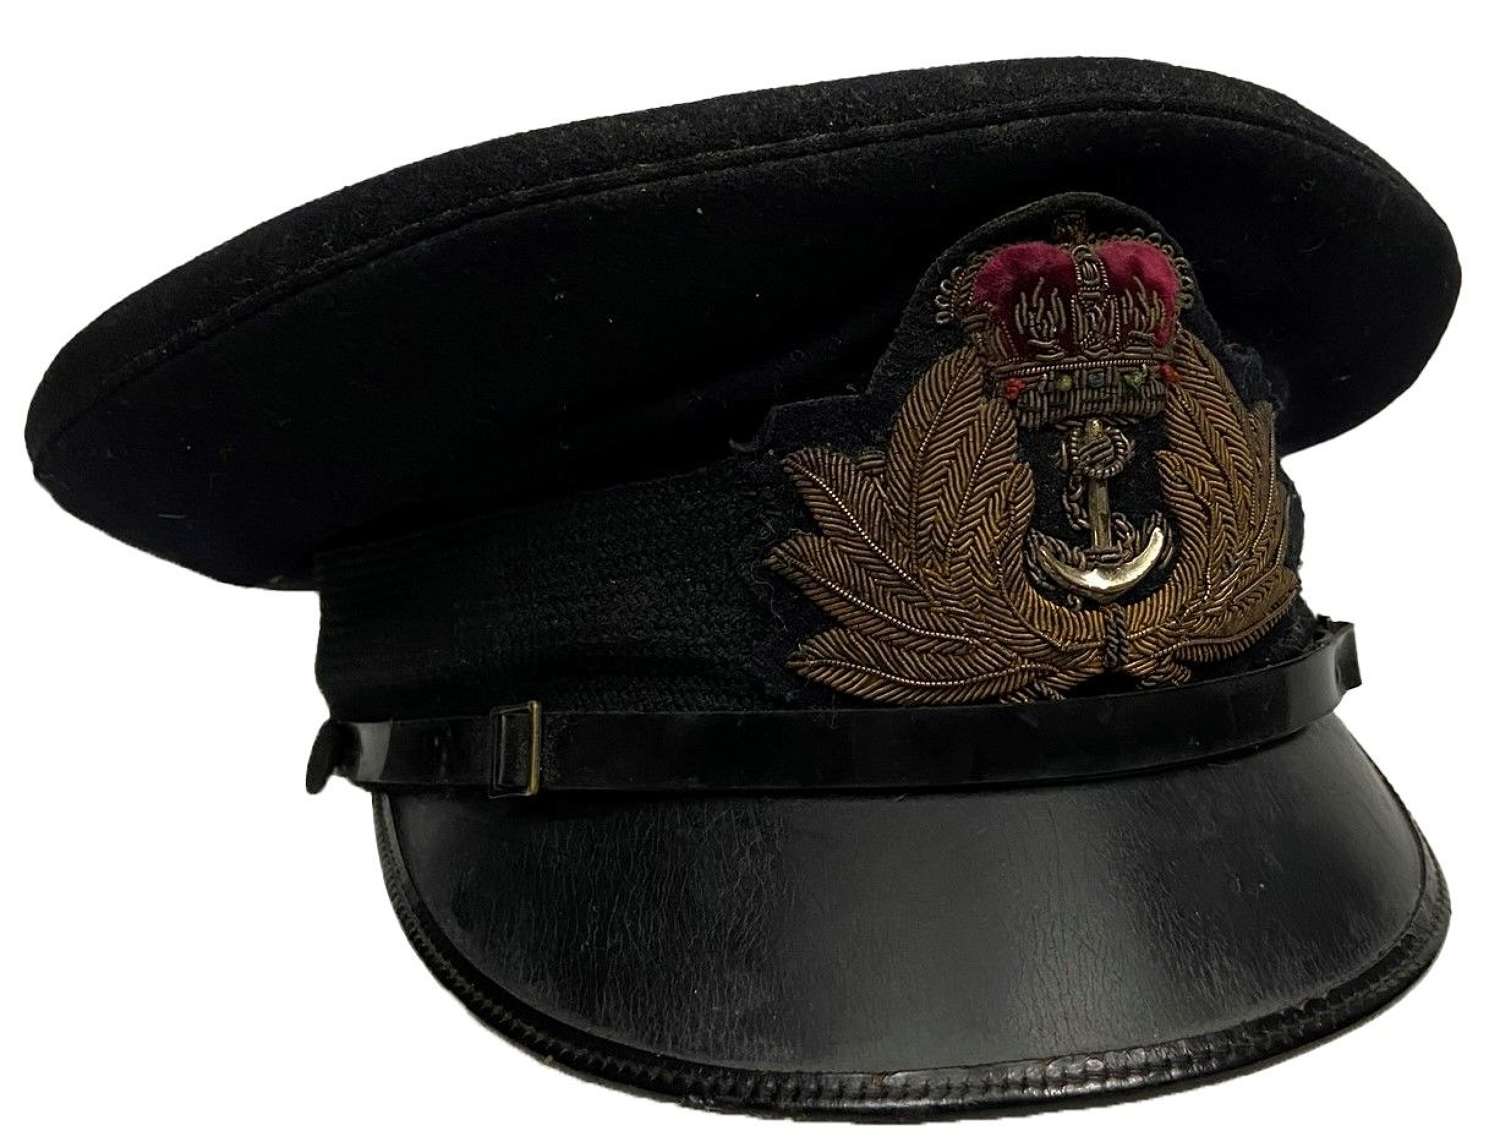 Original 1950s Royal Navy Officers Peaked Cap